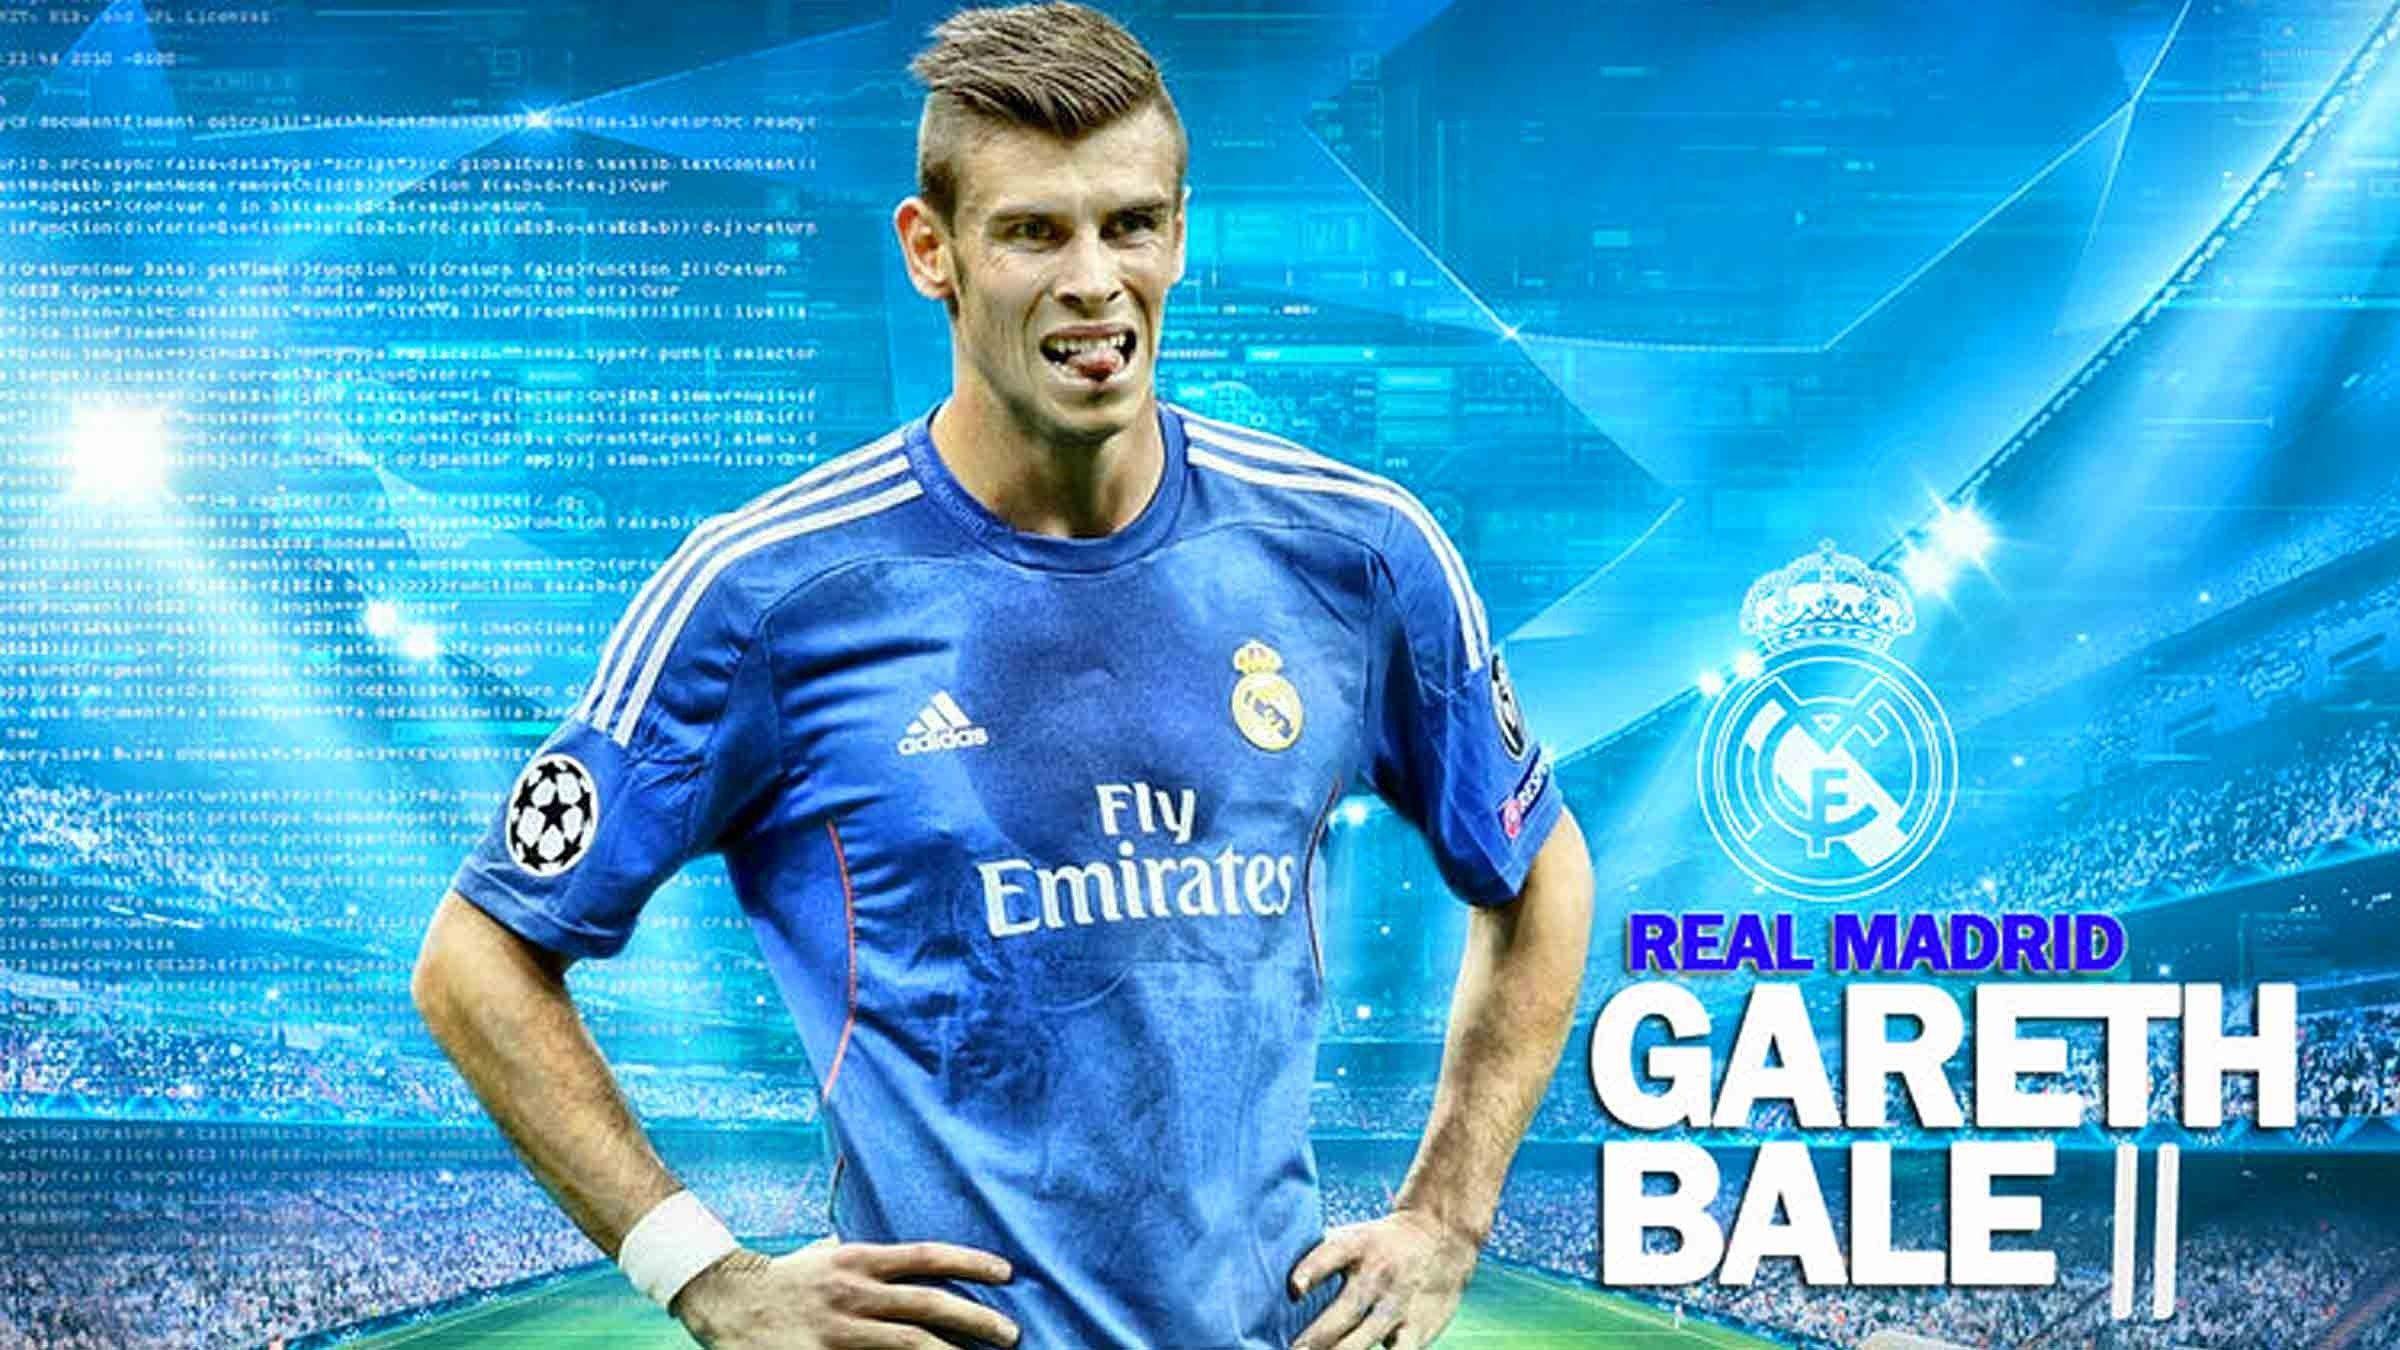 Wallpaper for Desktop Real Madrid Beautiful Gareth Bale Wallpaper